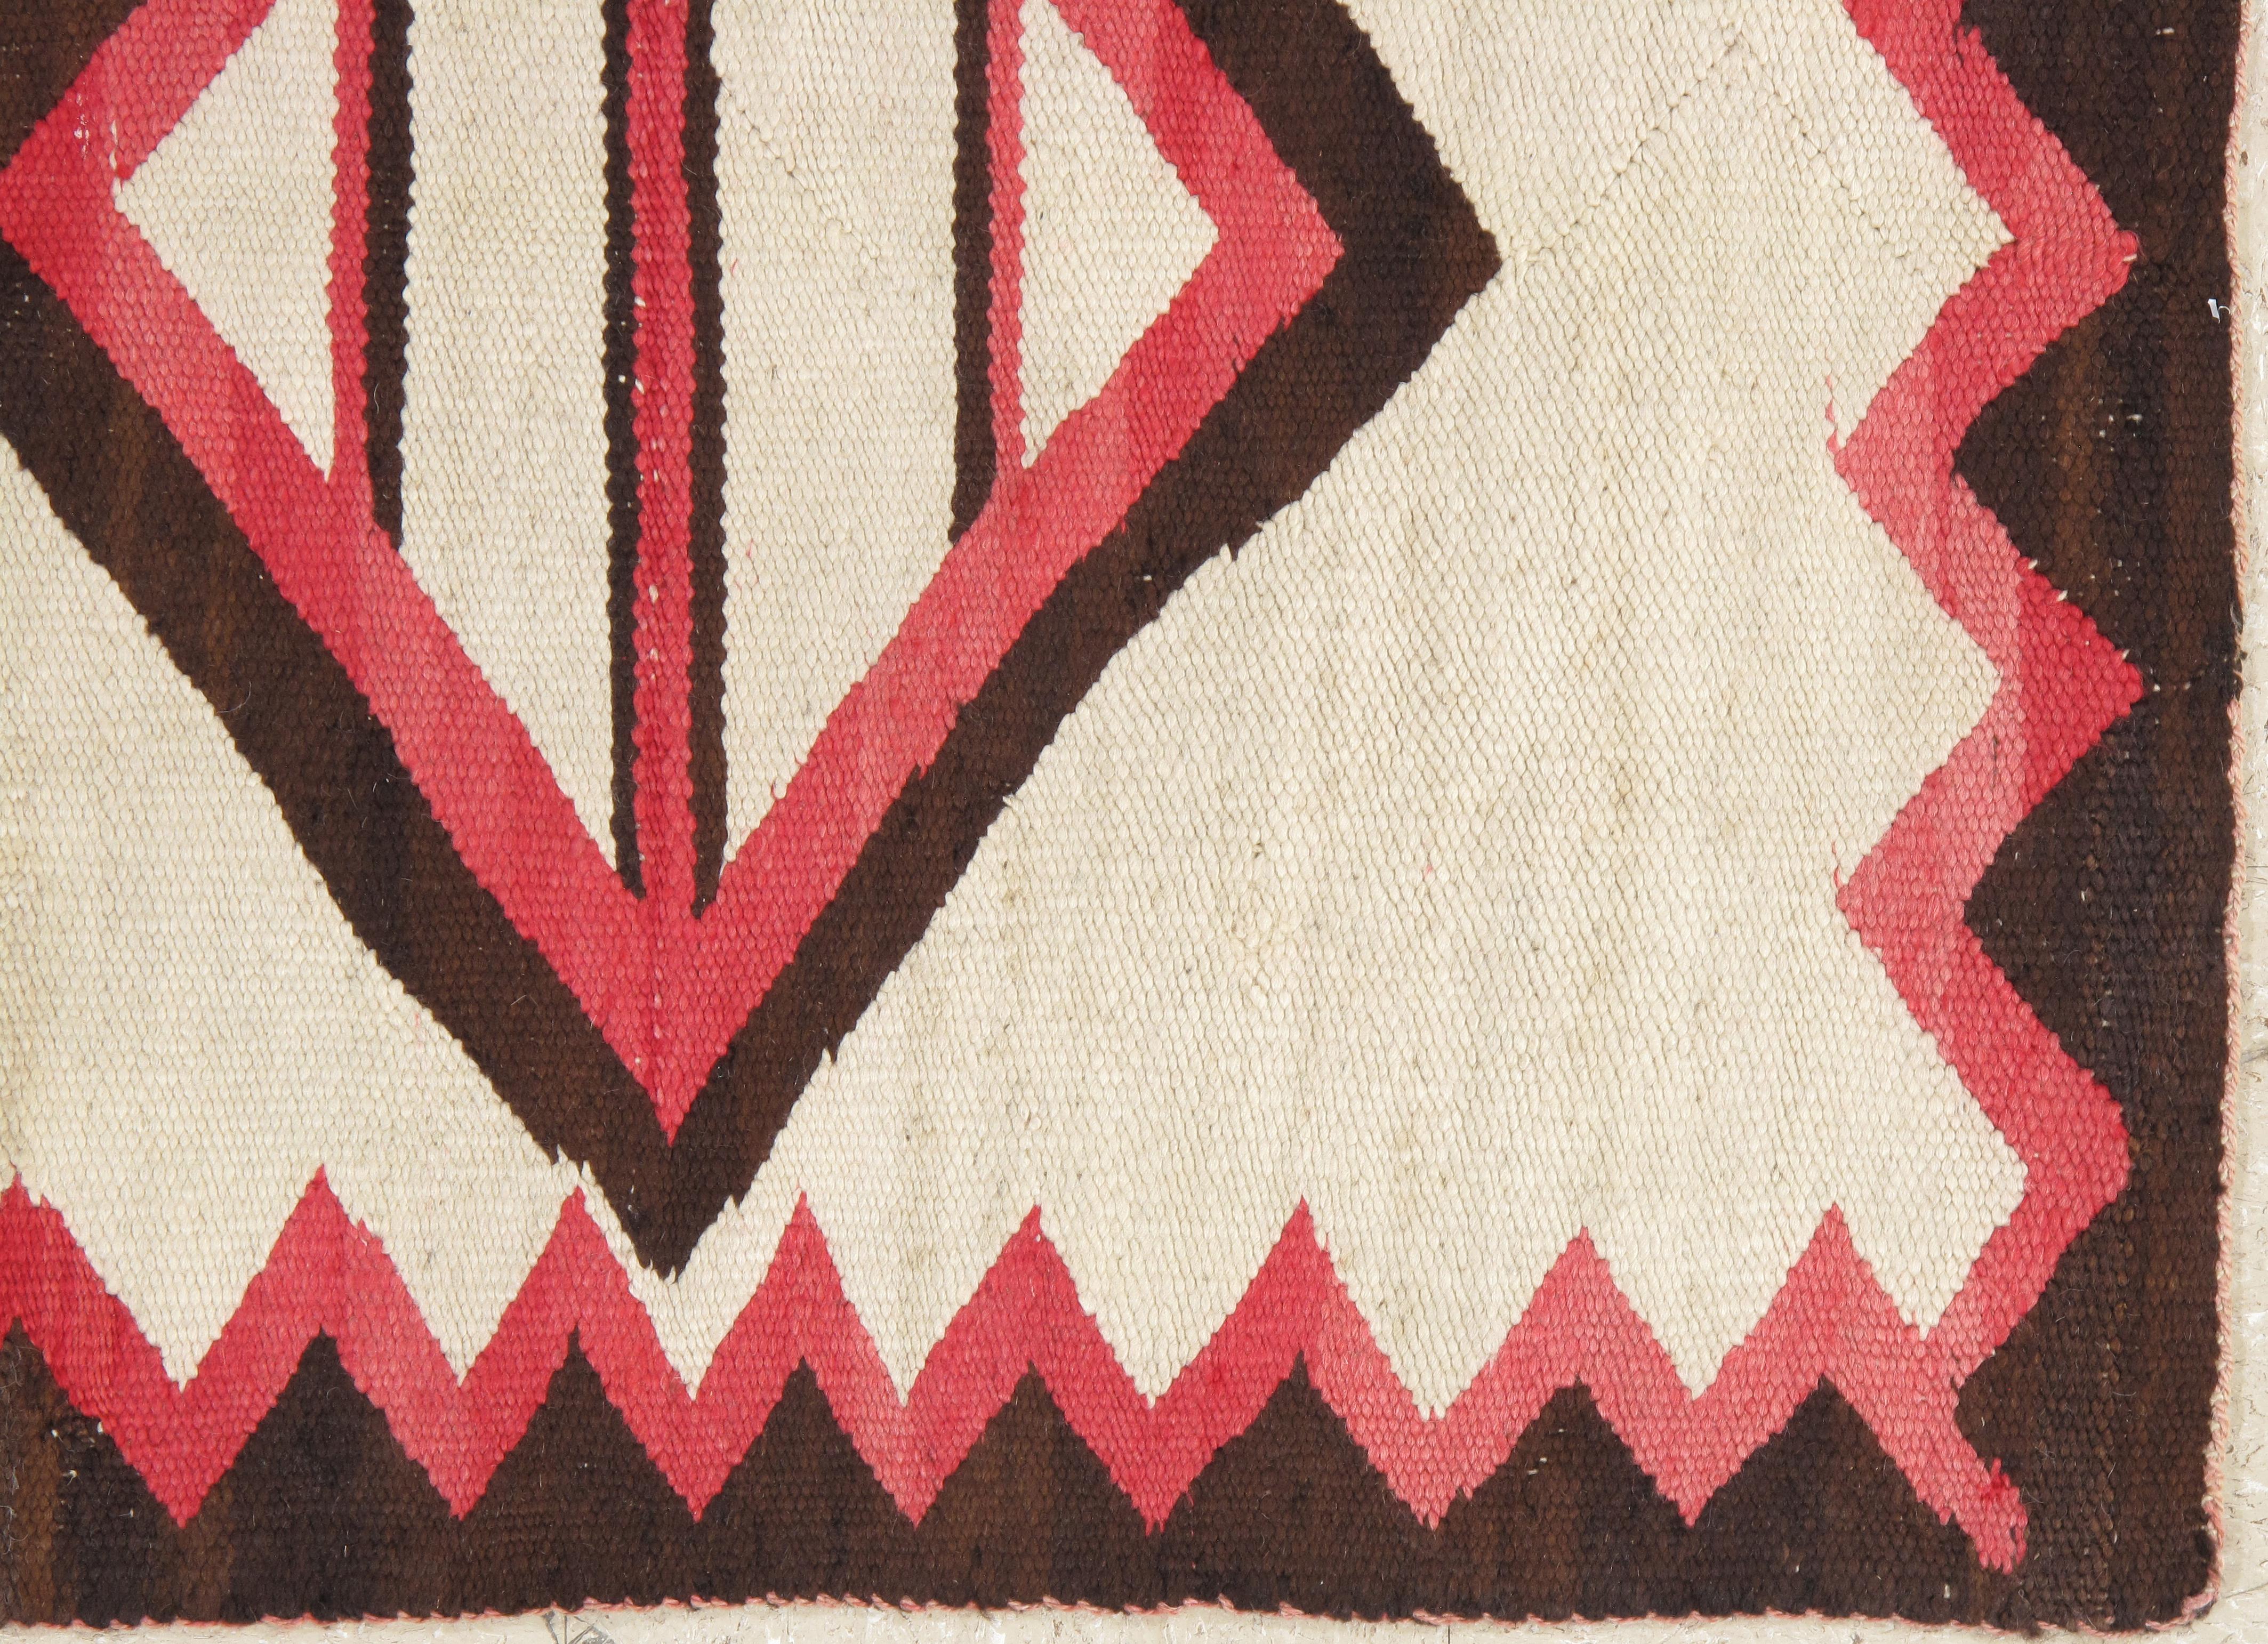 Hand-Woven Vintage Navajo Rug, Folk Rug, Handmade Wool, Beige, Coral, Brown, Neutral